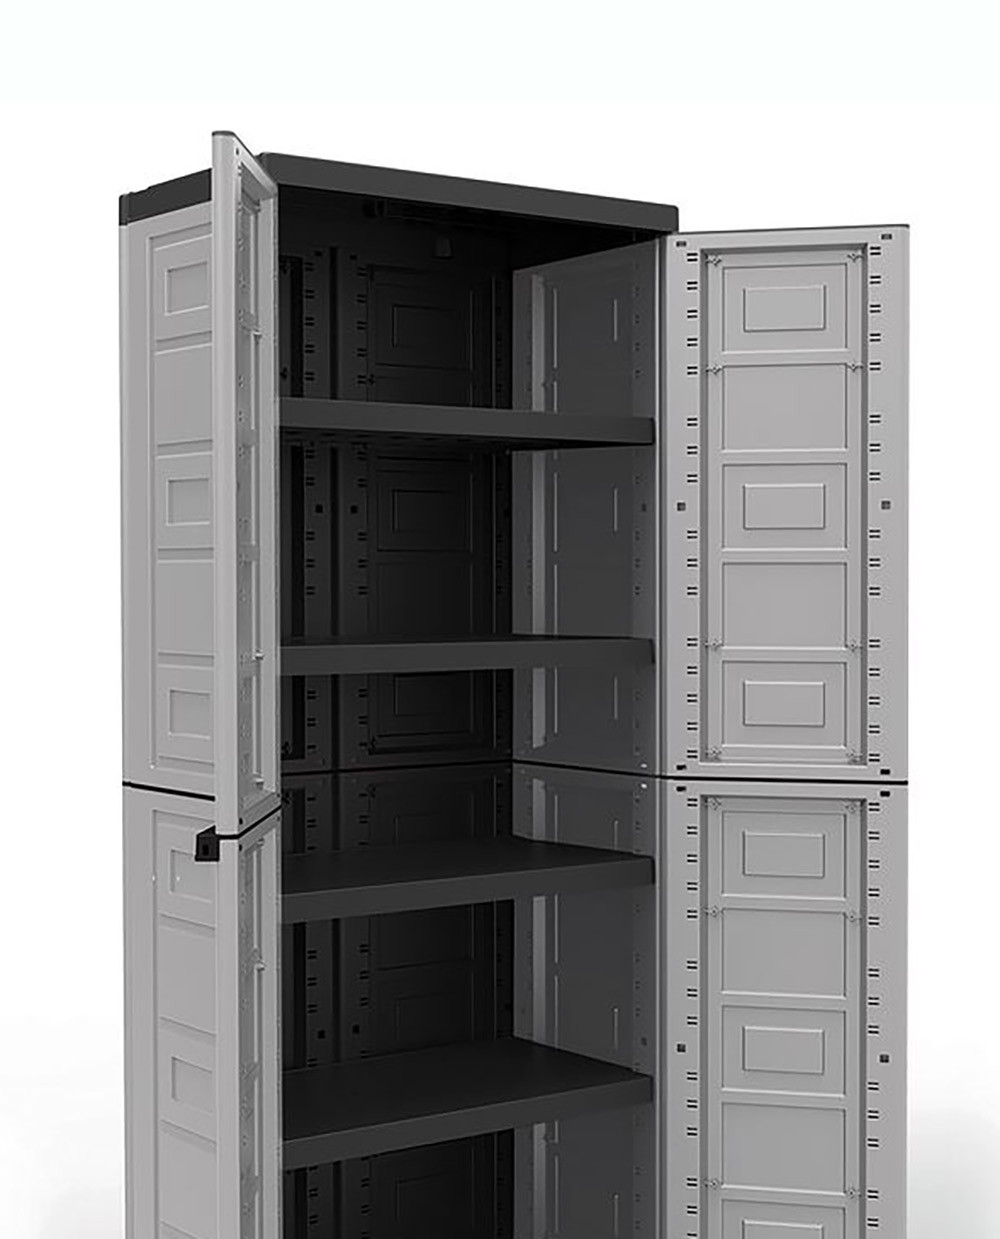 Best ideas about Plastic Garage Storage Cabinets
. Save or Pin Contico 4 Shelf Plastic Garage Storage Organizer Base Now.